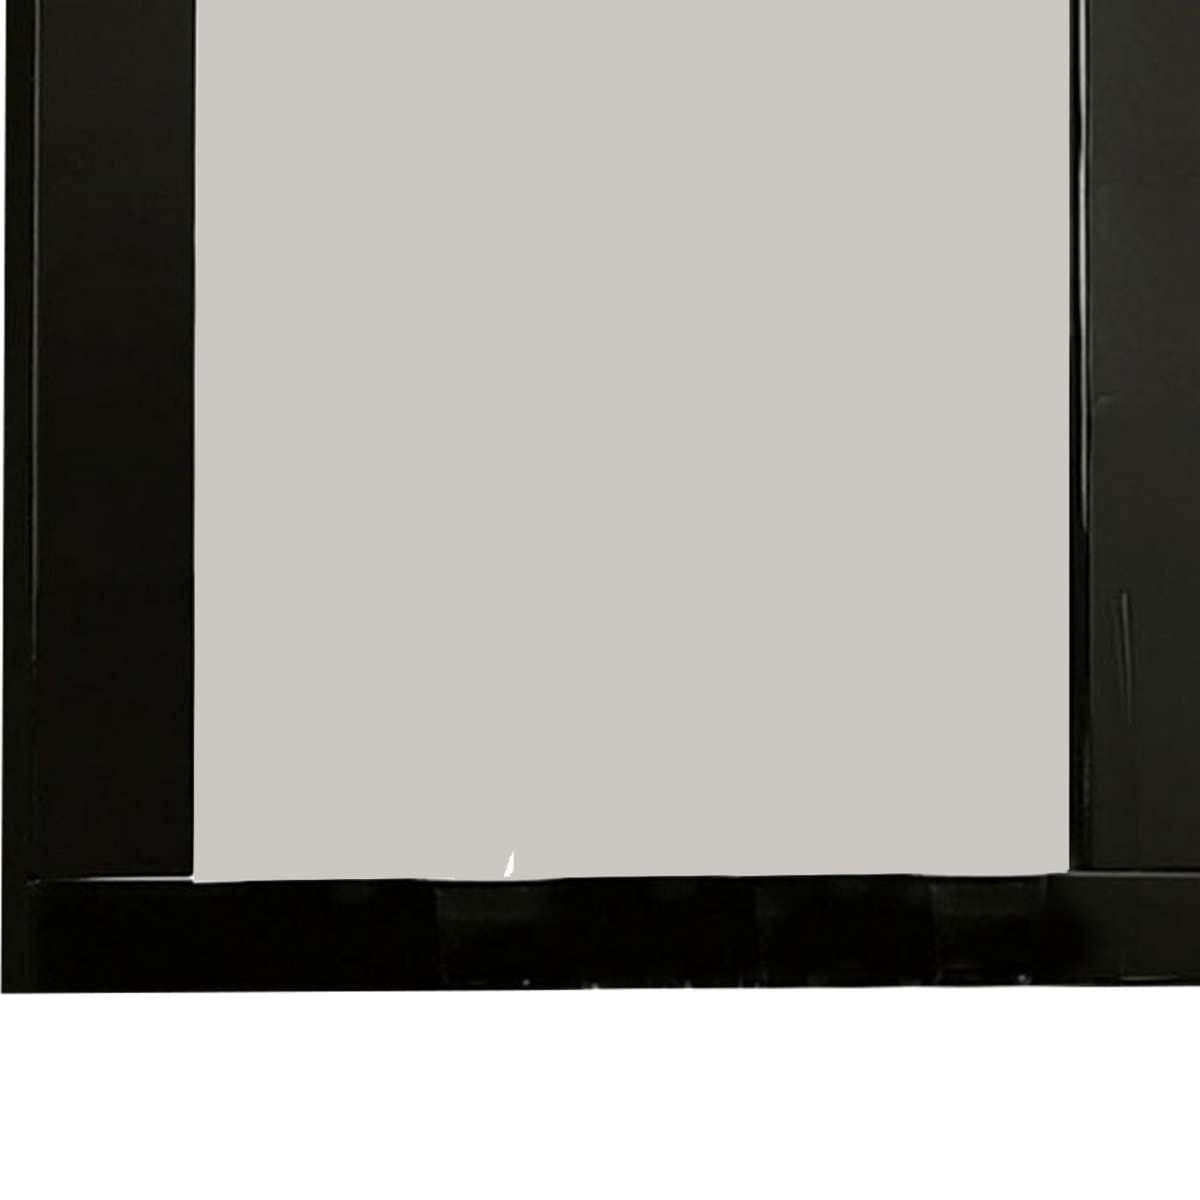 Benzara 37 Inch Rectangular Mirror With Wooden Frame, Black By Benzara Mirrors BM233769